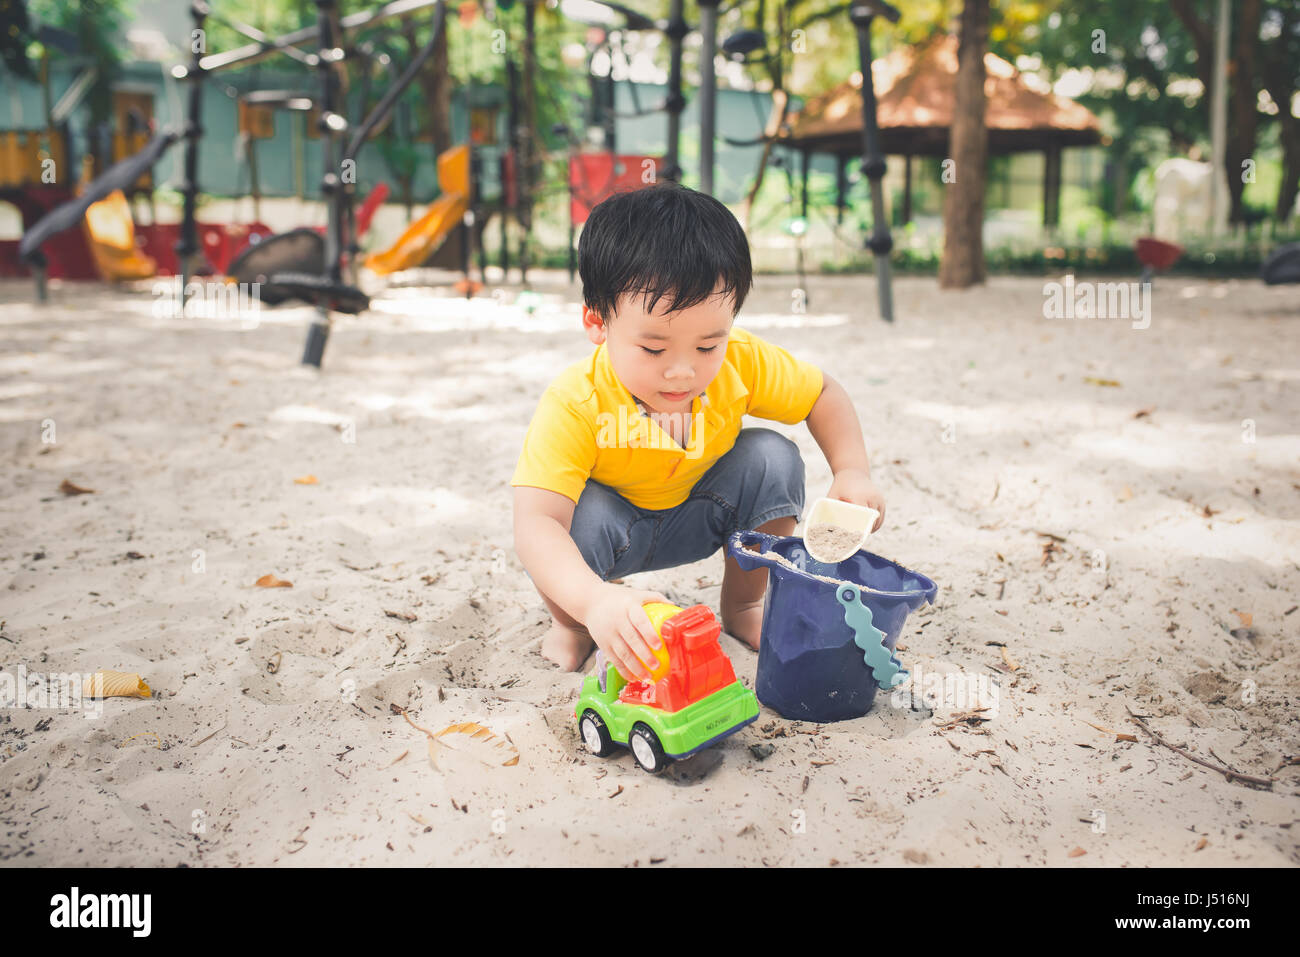 Niedliche kleine asiatische junge in einem Park an einem schönen Tag im freien Stockfoto